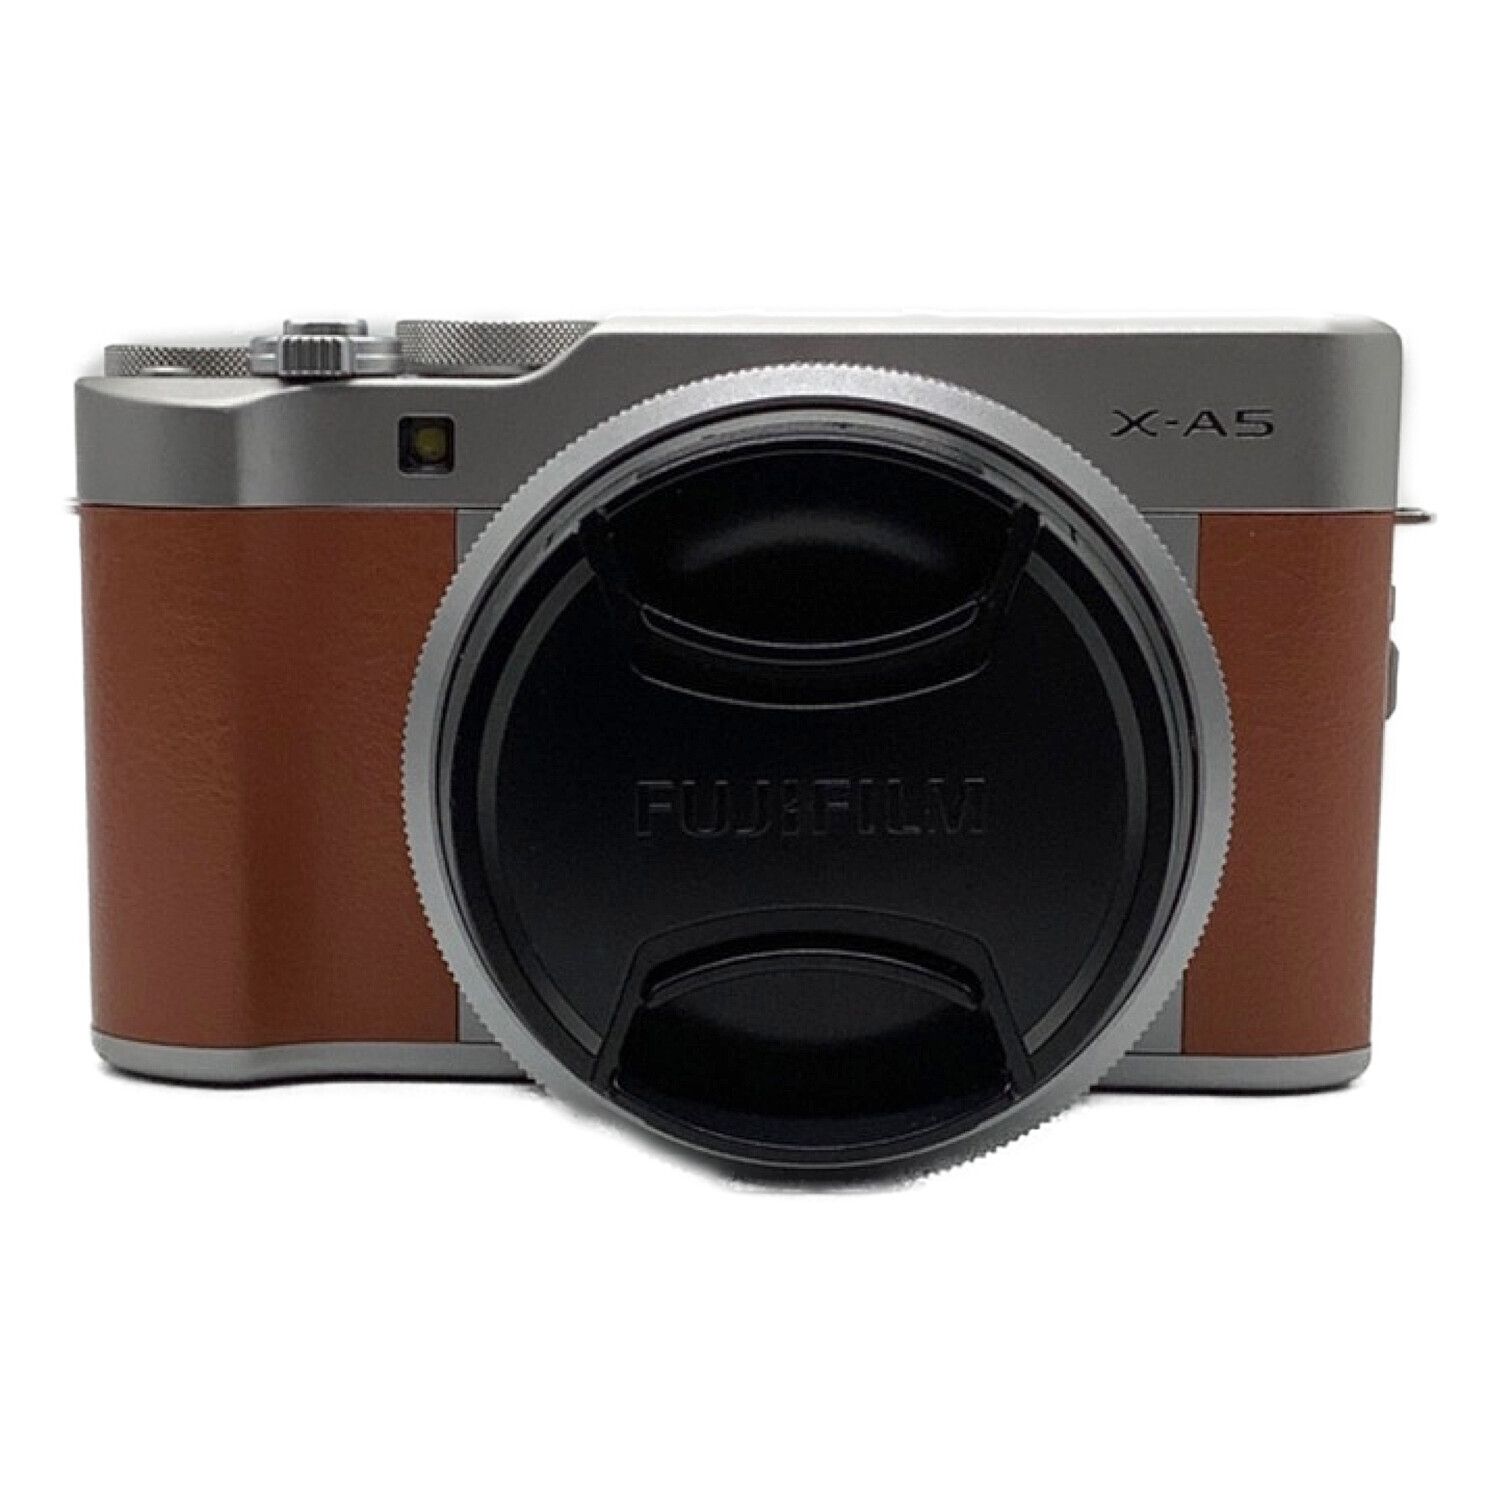 FUJIFILM (フジフィルム) デジタル一眼レフカメラ ブラウン X-A5 2424